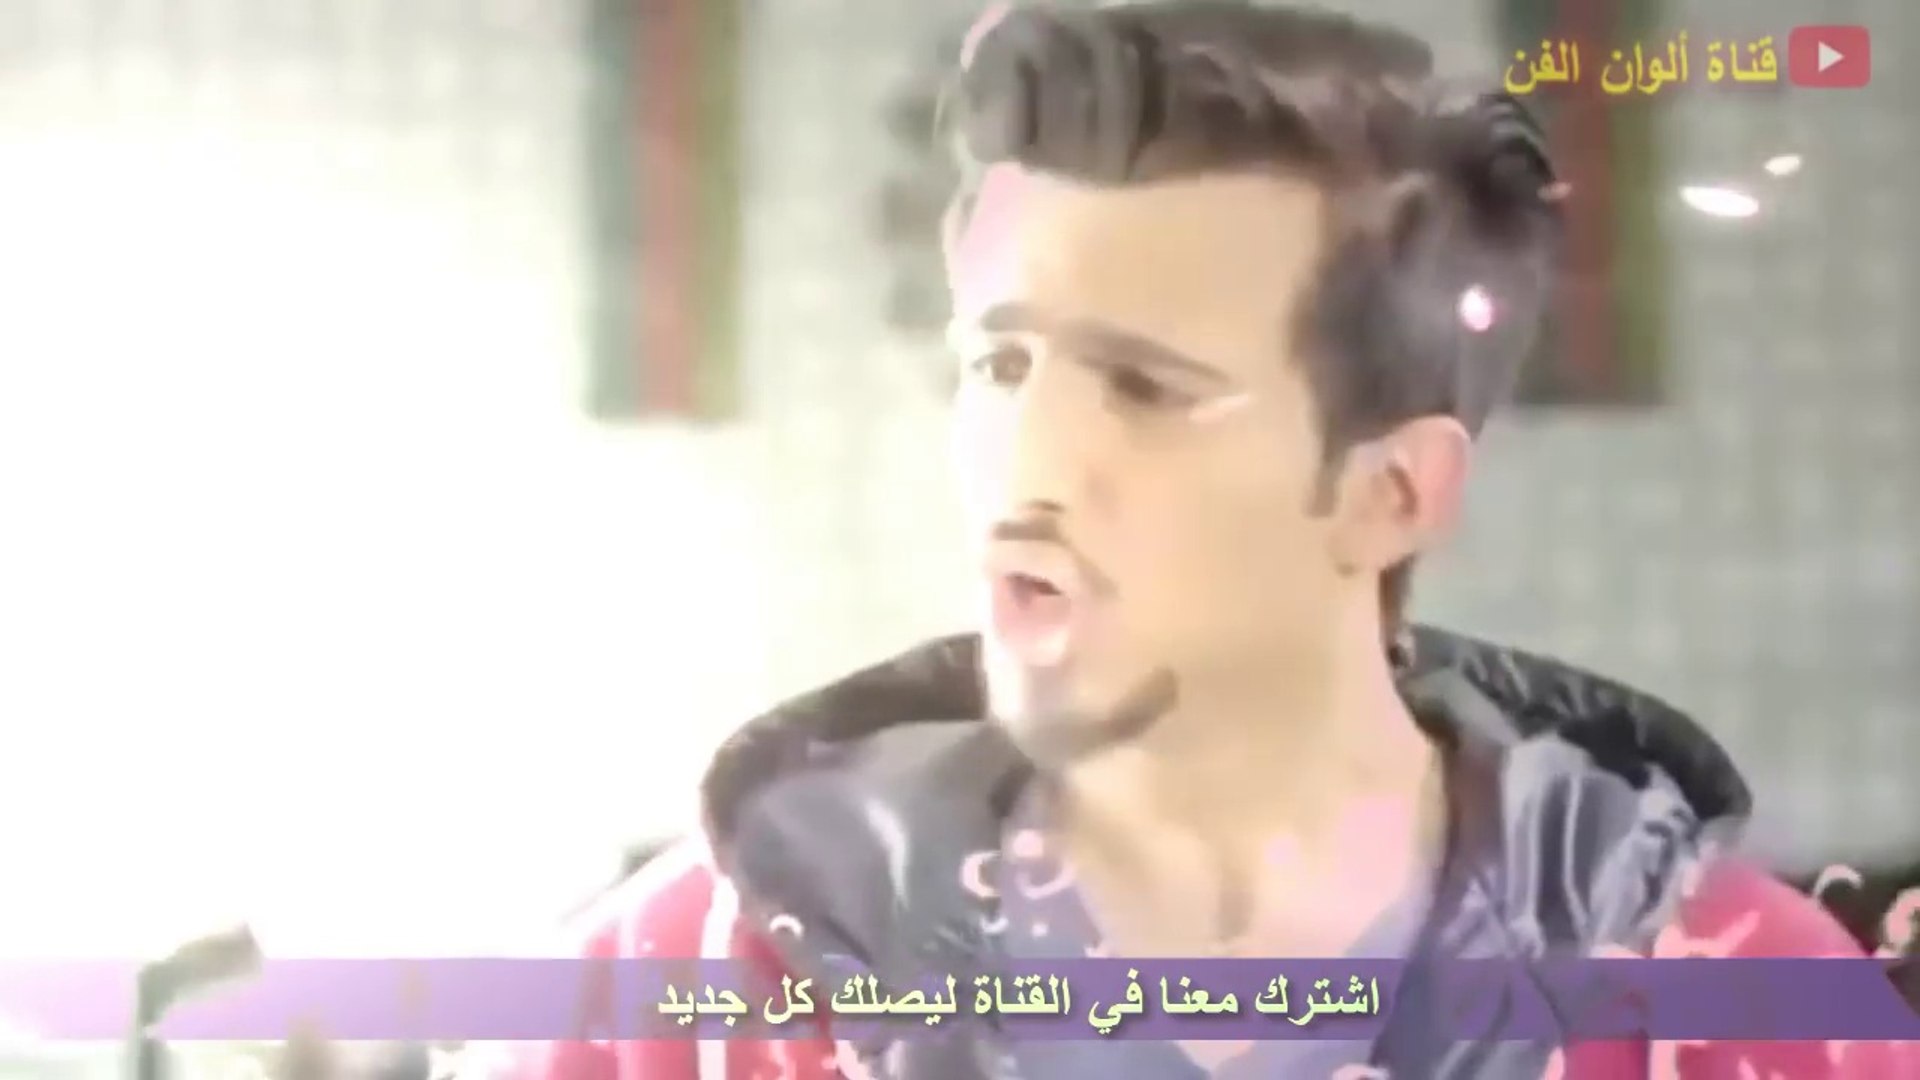 اعلان مسلسل الوجه المستعار حسين المنصور وهنادي الكندري رمضان 2016 - video  Dailymotion